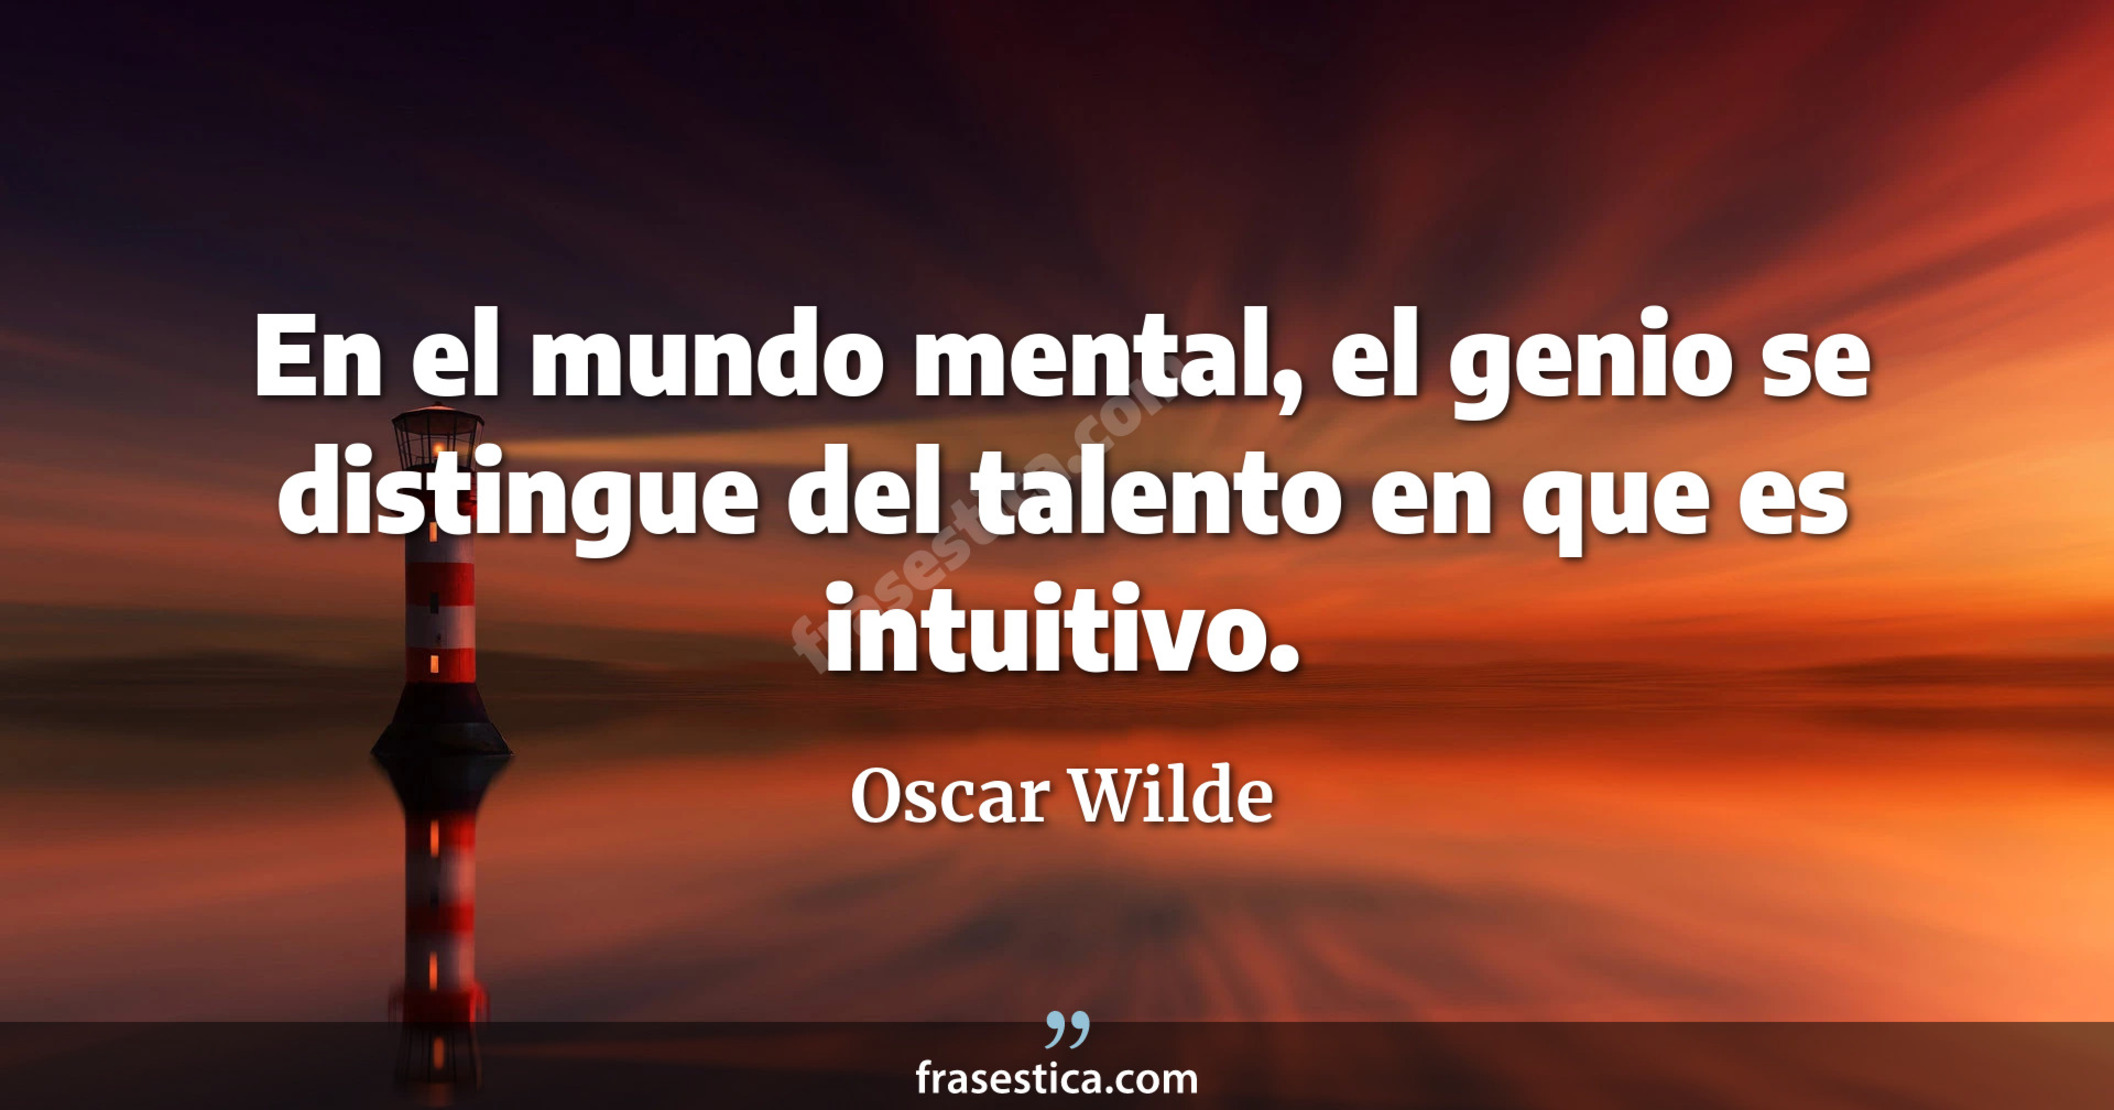 En el mundo mental, el genio se distingue del talento en que es intuitivo. - Oscar Wilde